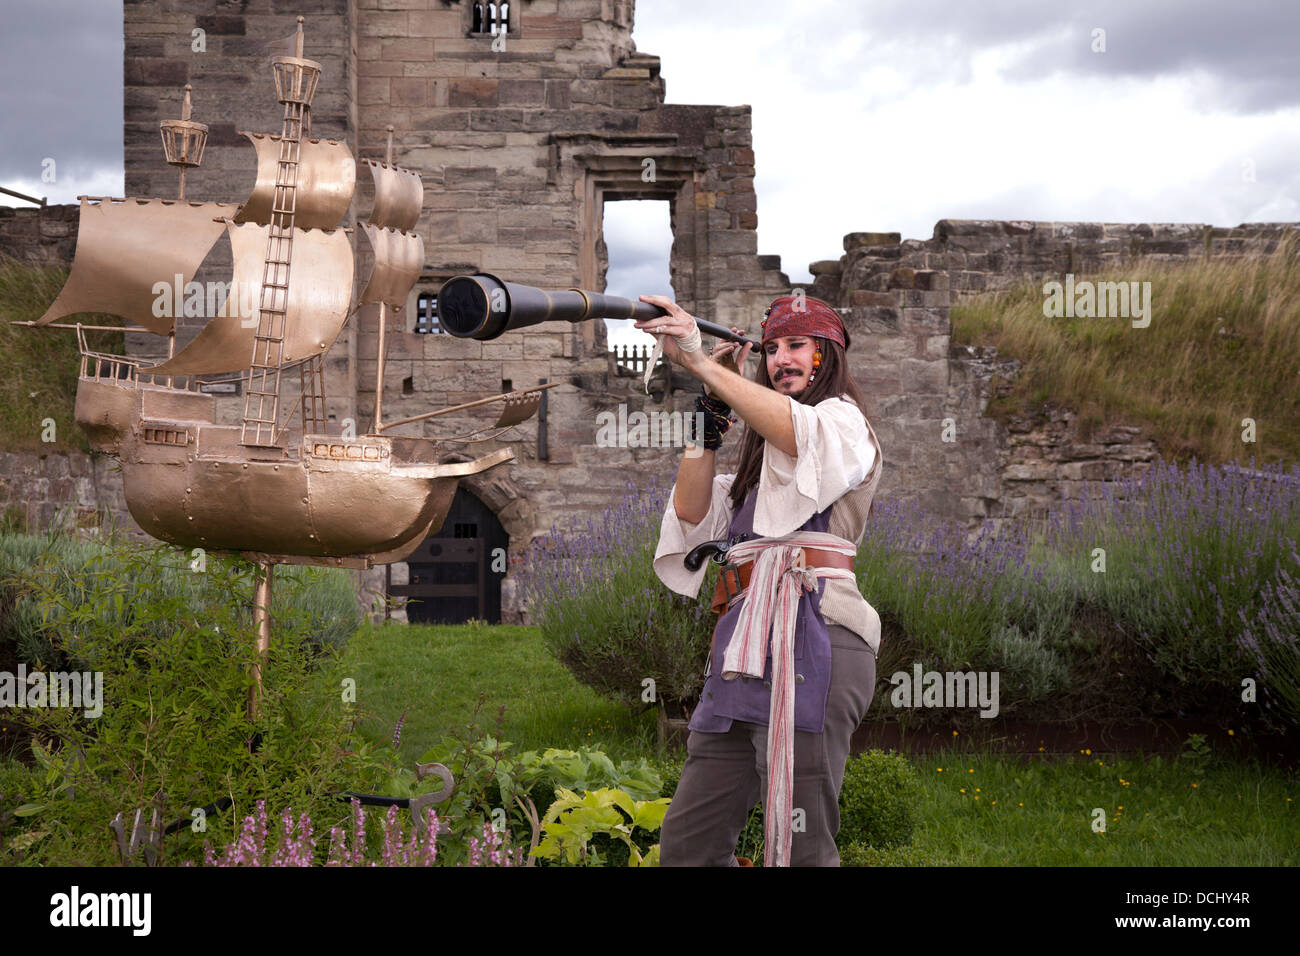 Pirate avec télescope et à l'Ornement de jardin Galleon Tutbury Castle, Staffordshire, Royaume-Uni Banque D'Images